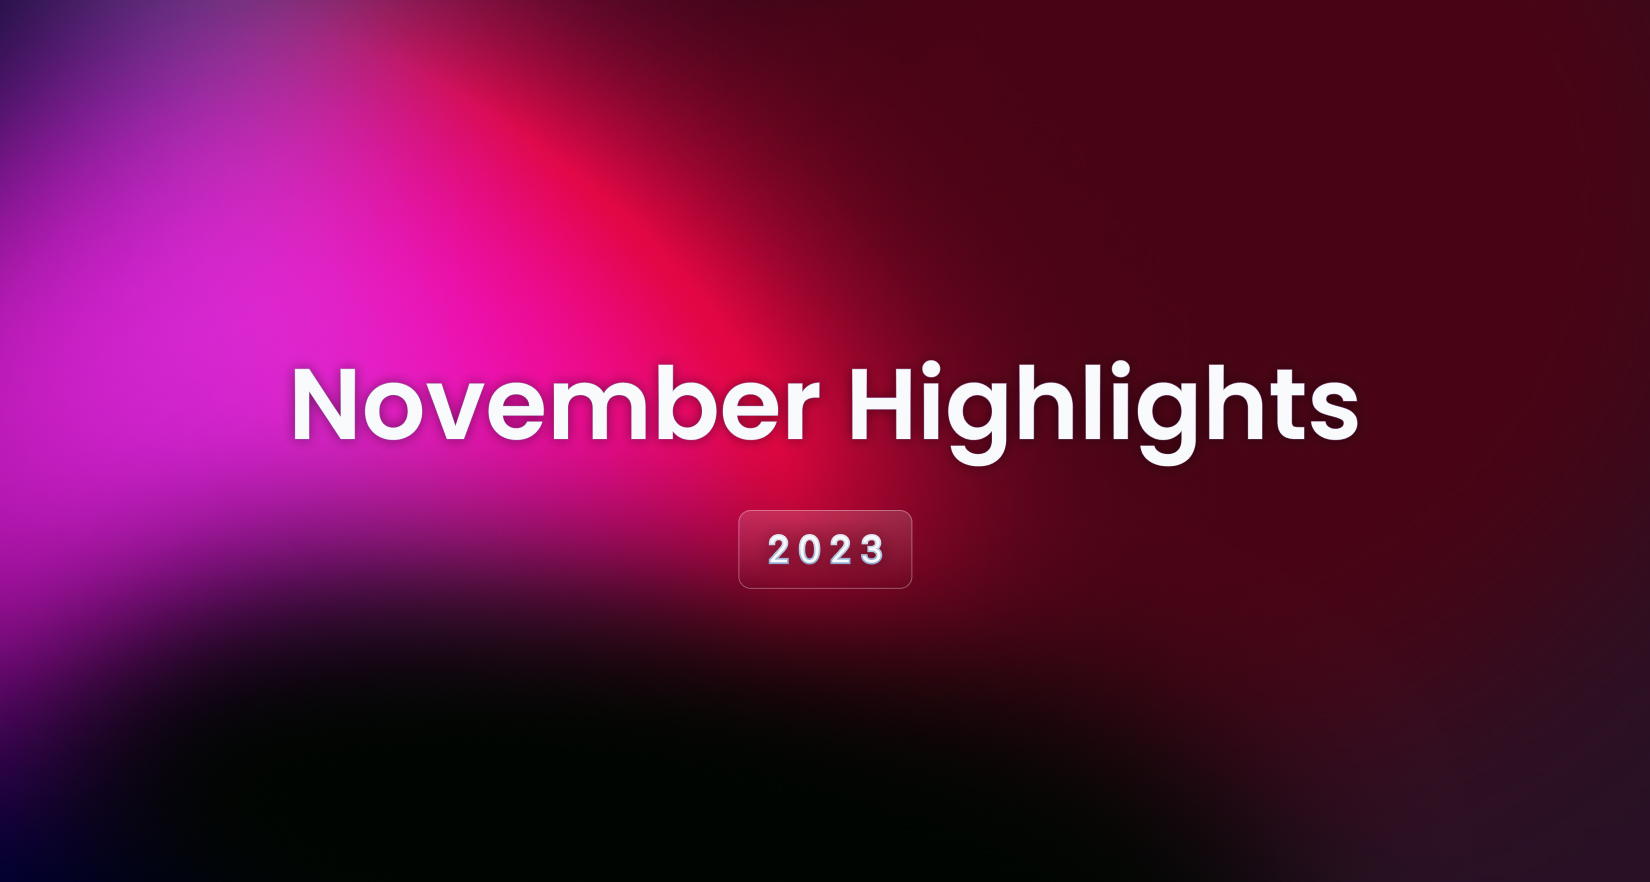 November 2023 Highlights